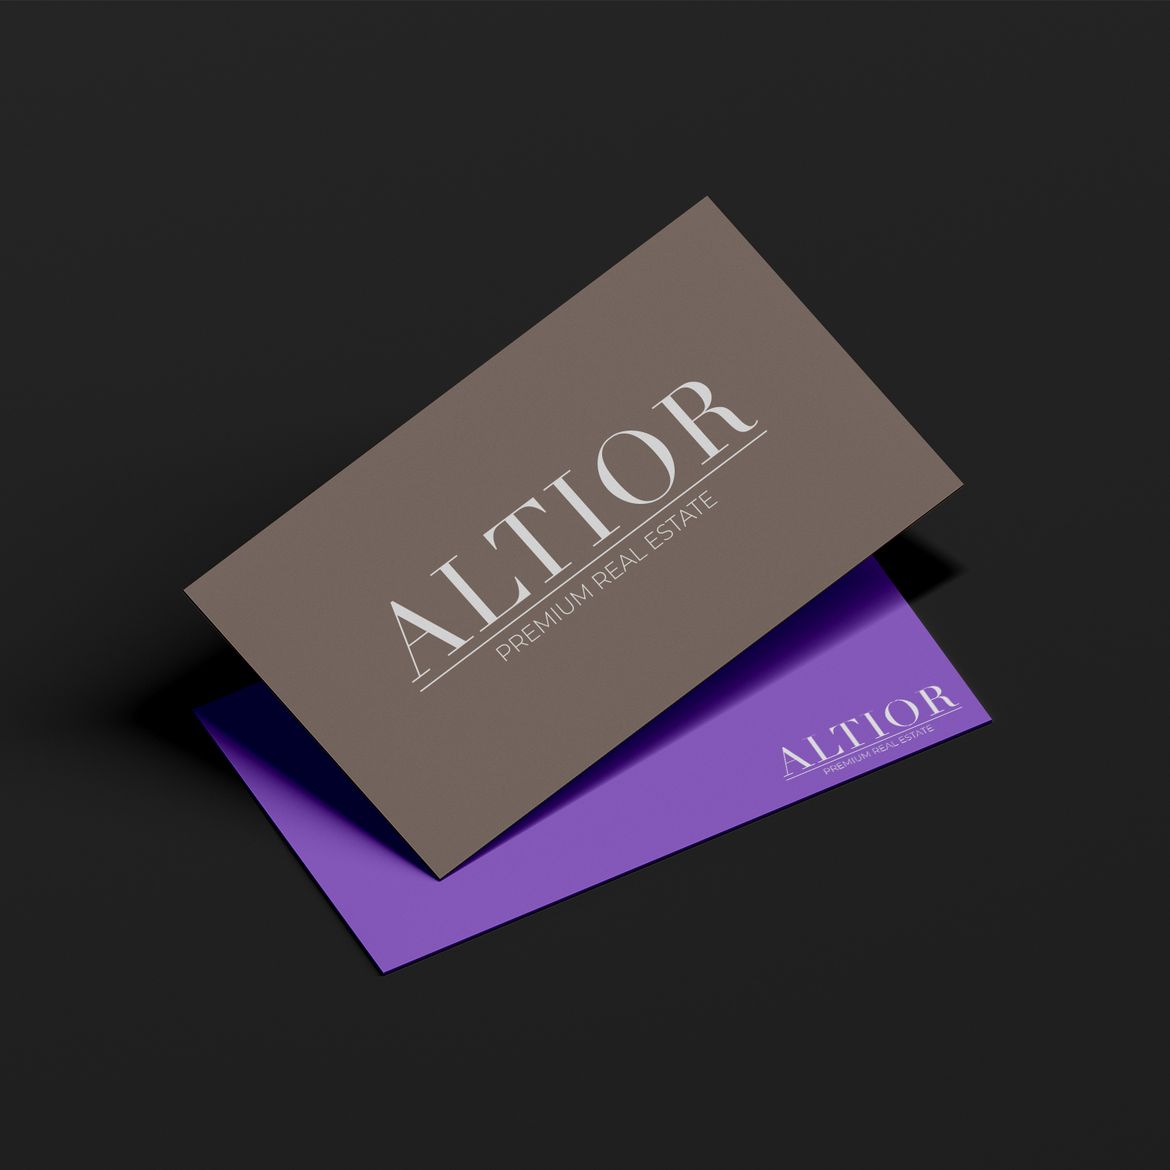 Darstellung der ALTIOR CI auf einer Visitenkarte